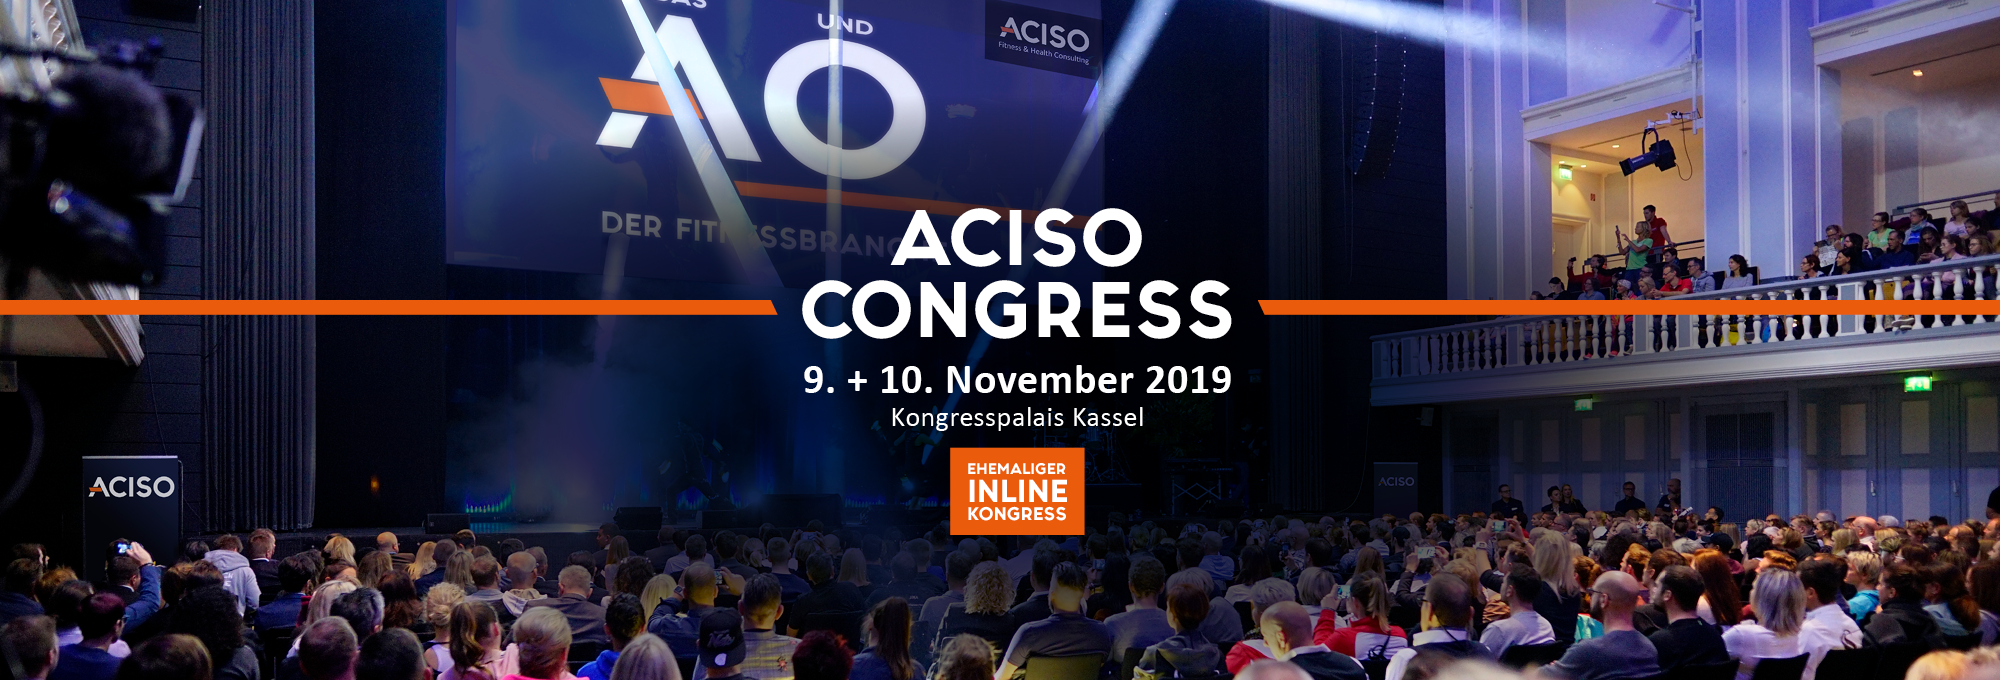 ACISO Congress